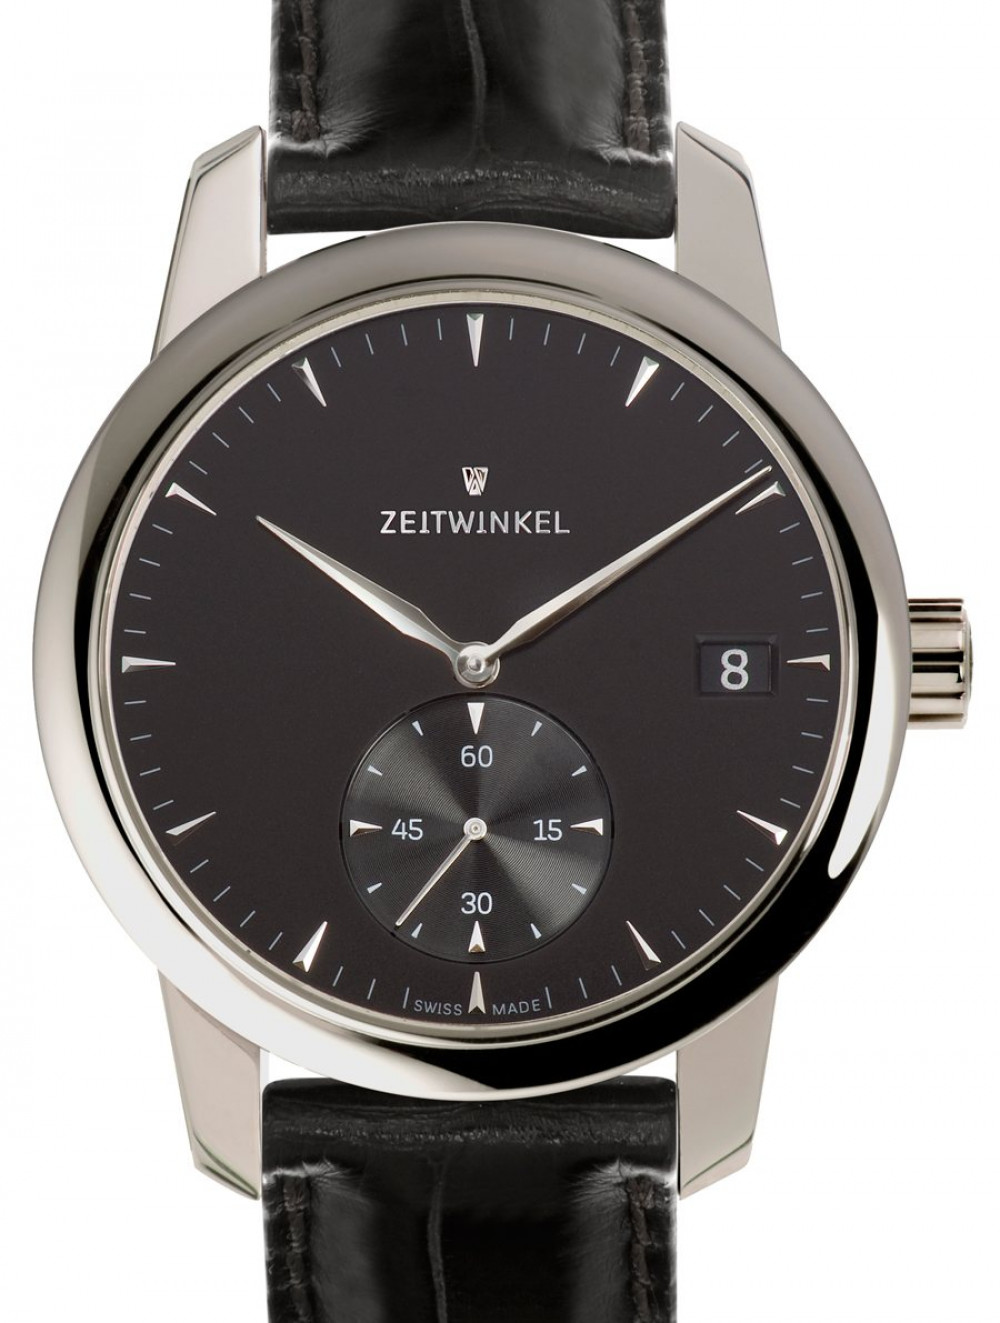 Zegarek firmy Zeitwinkel, model Zeitwinkel 181°